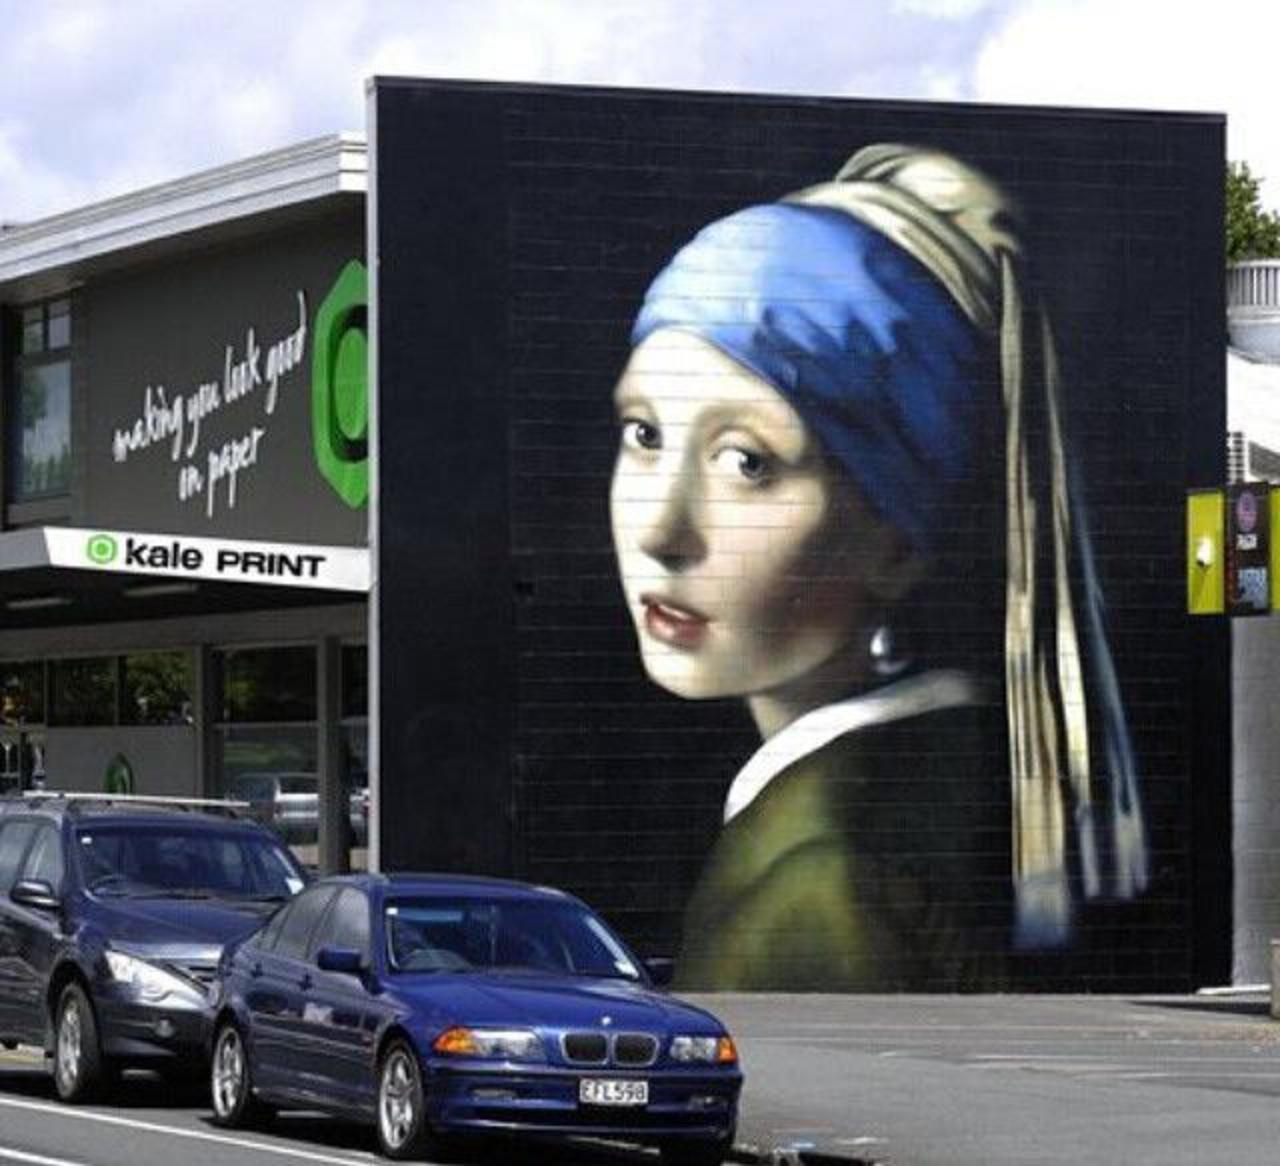 The Girl with the Pearl Earring Street Art by Owen Dippie in New Zealand 

#art #arte #graffiti #streetart http://t.co/1Wj3Uedmbl